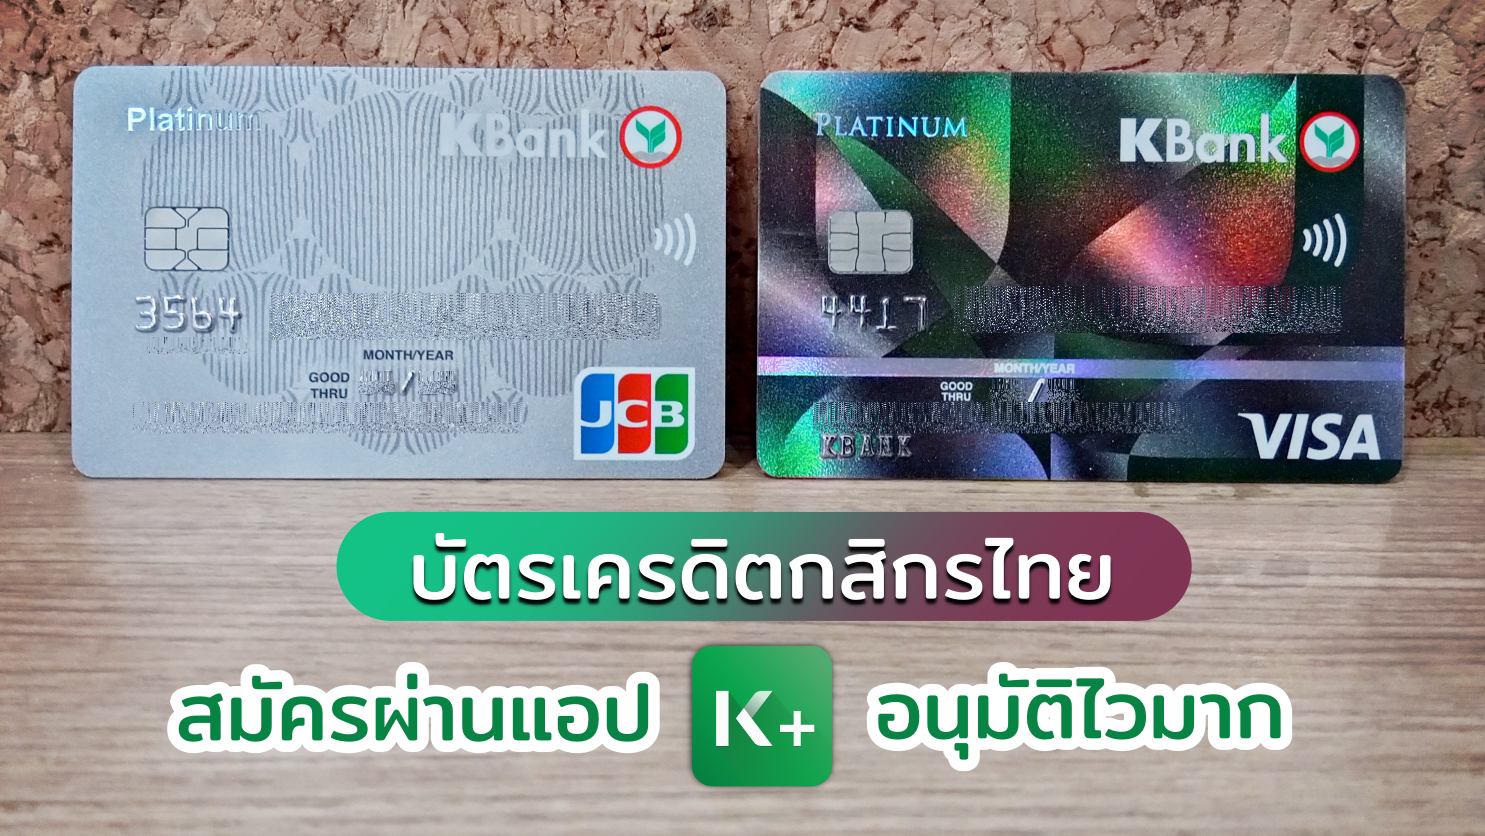 รีวิว สมัครบัตรเครดิตกสิกรไทย ผ่านแอป K Plus รู้ผลไวมาก